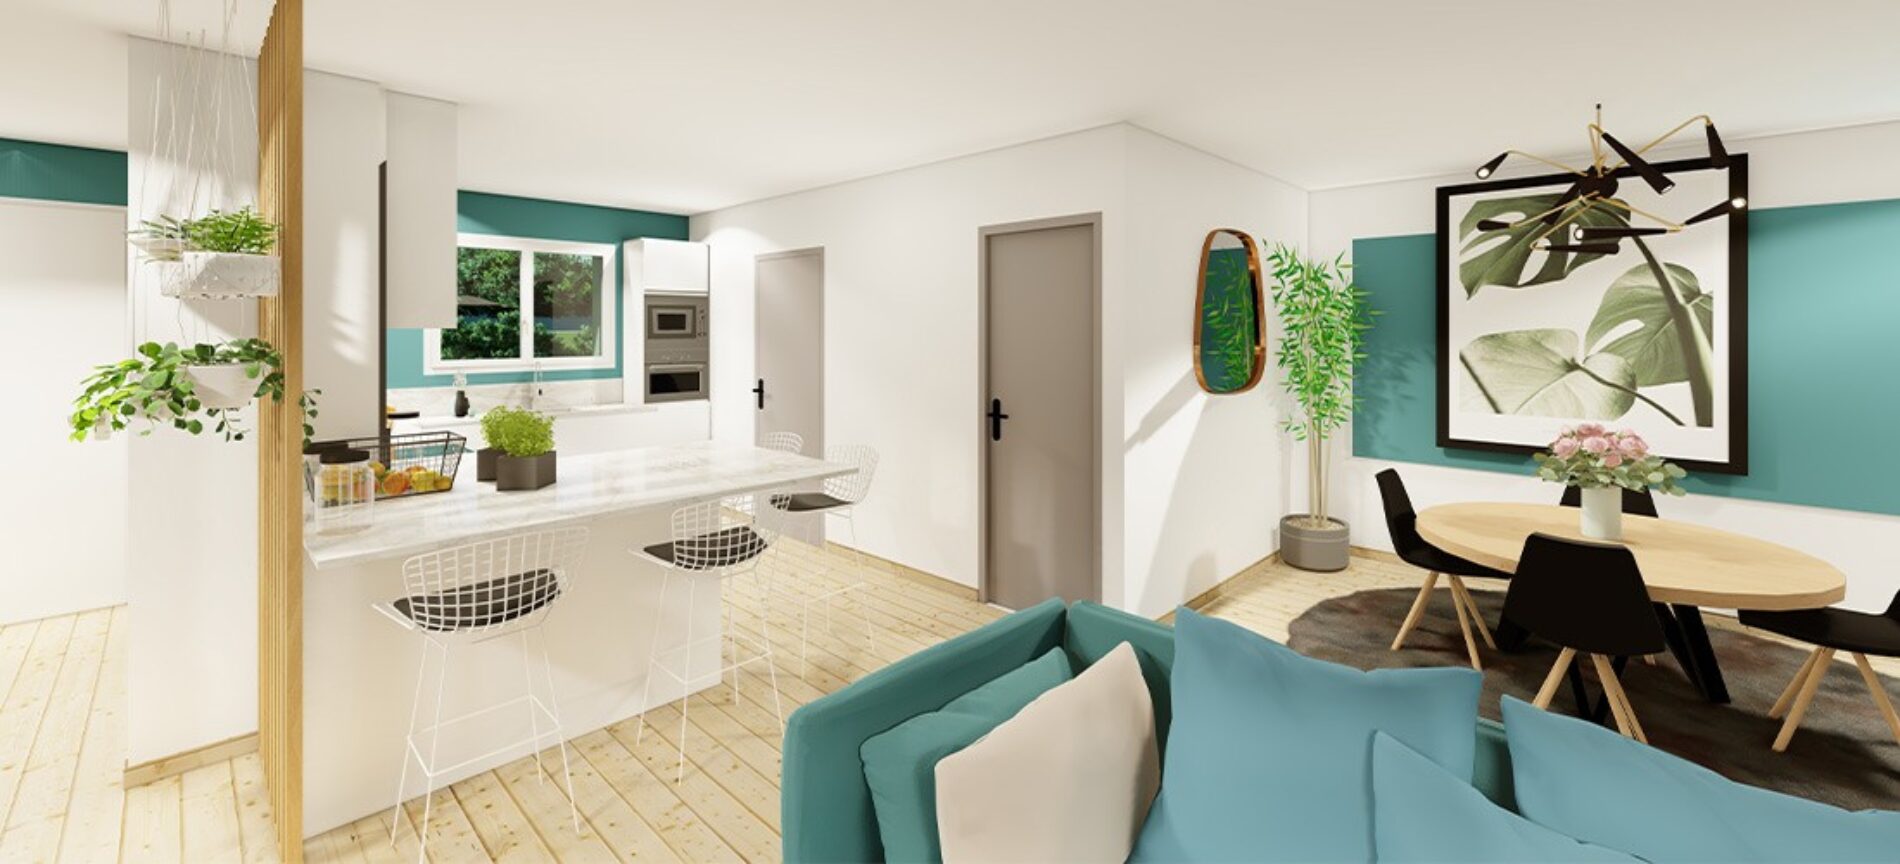 Modèle de maison Pavot | 100 m² | 3 chambres | Maisons MCA